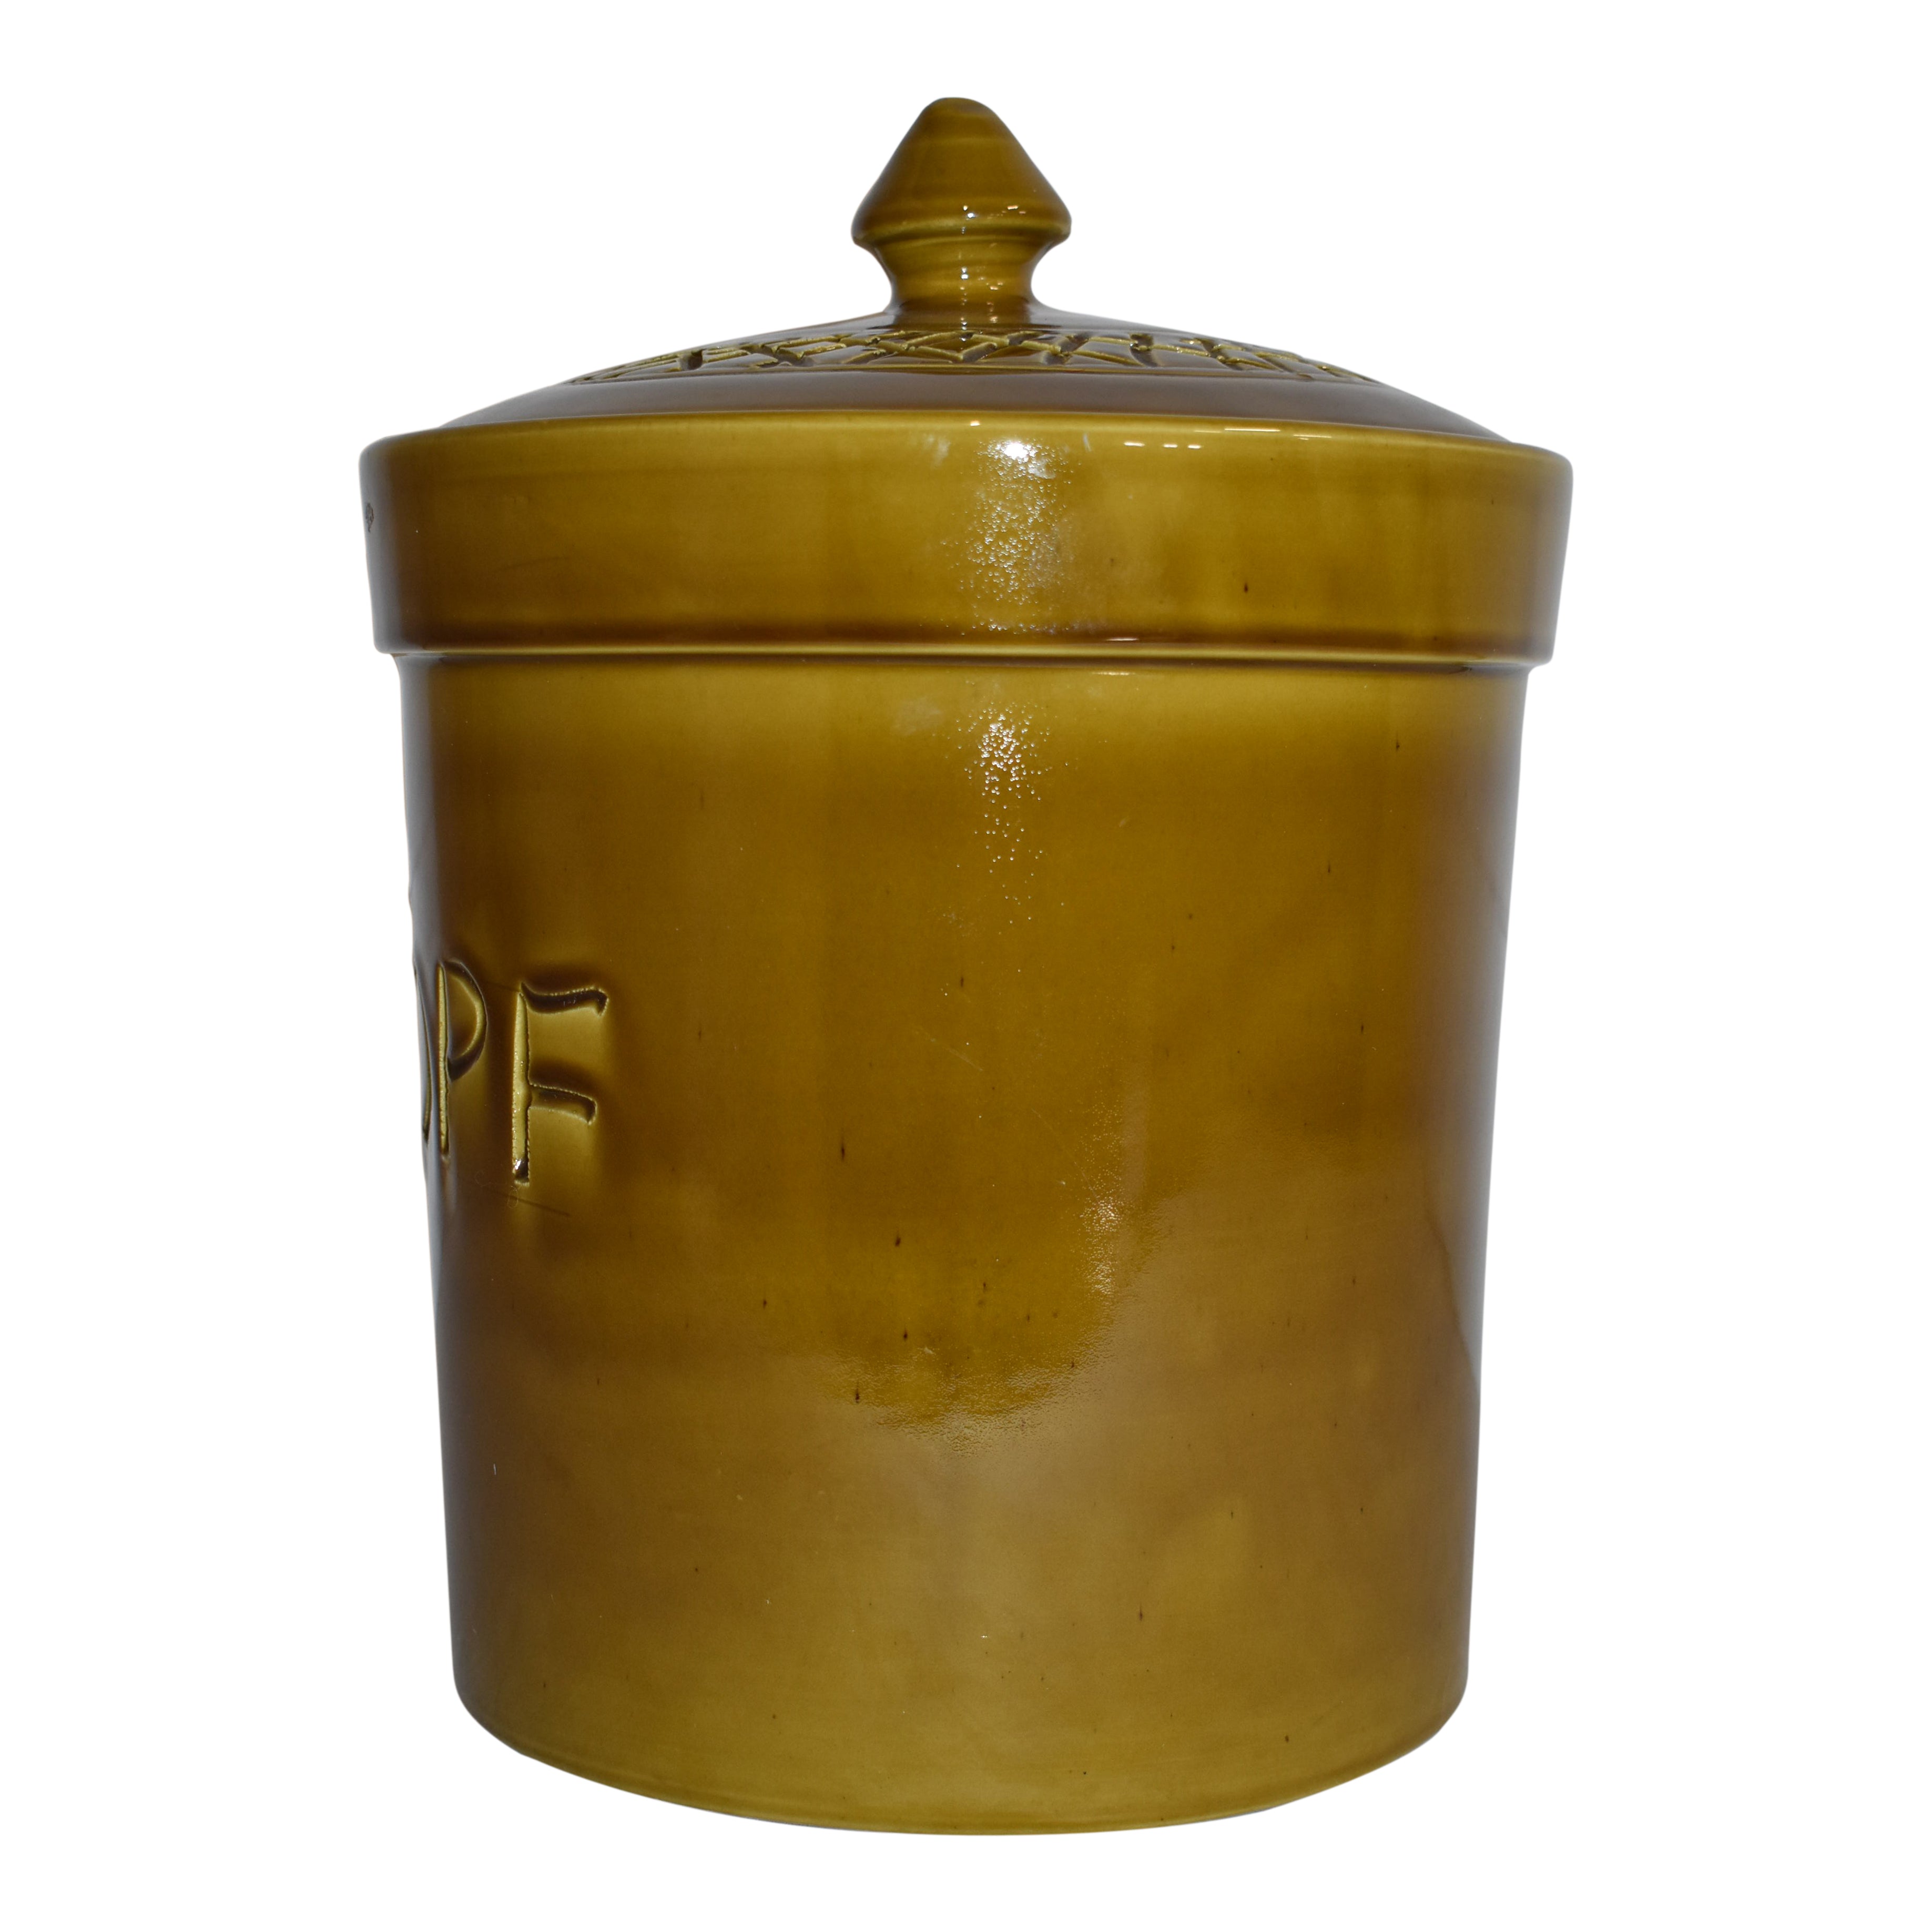 German Ceramic Rumtopf (Rum Pot) Crock